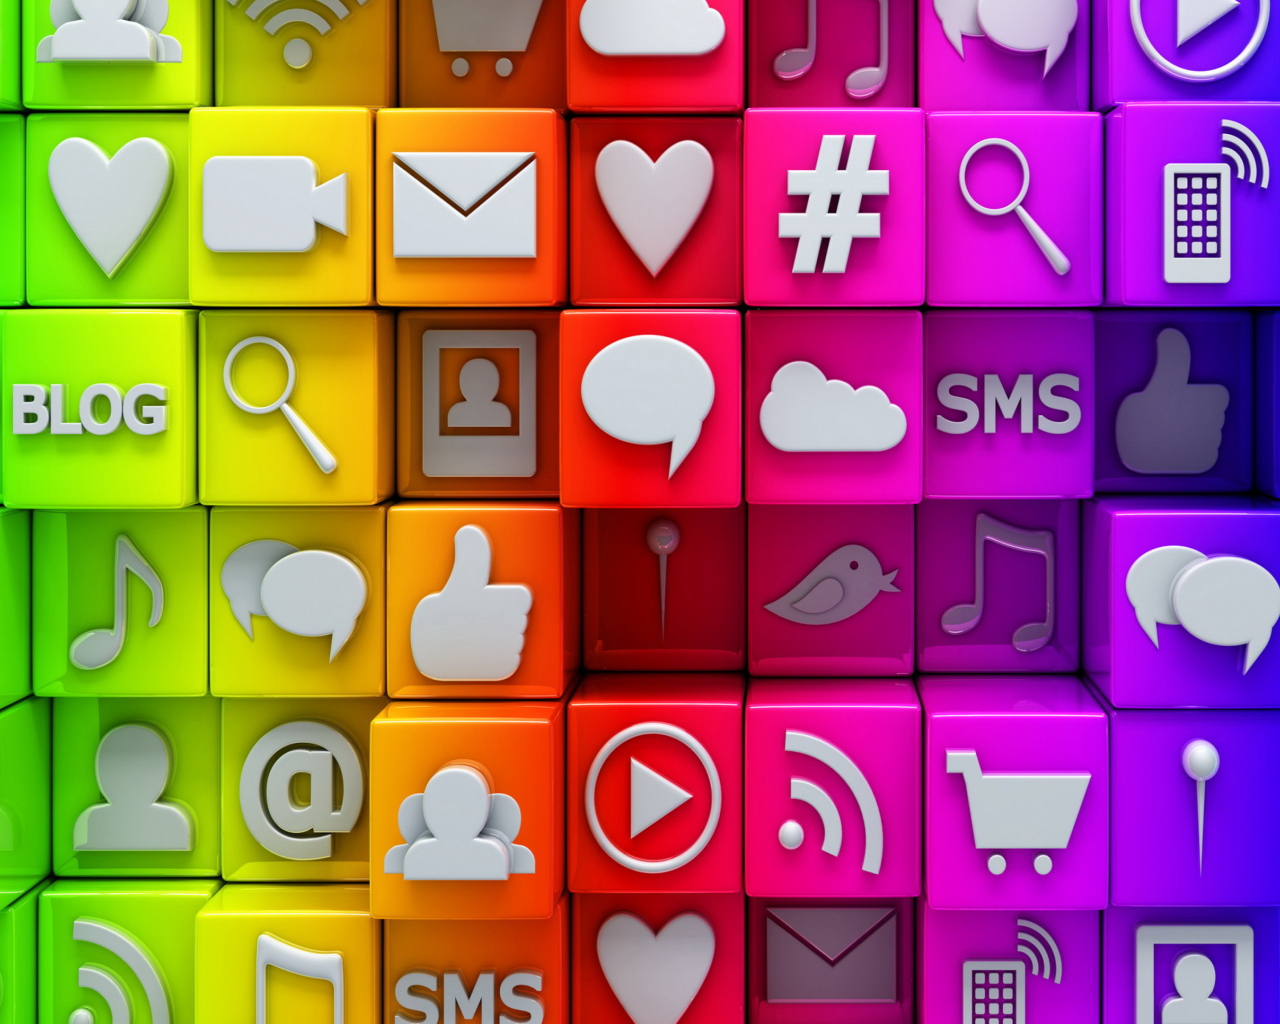 Sfondi Social  Media Icons: SMS, Blog 1280x1024